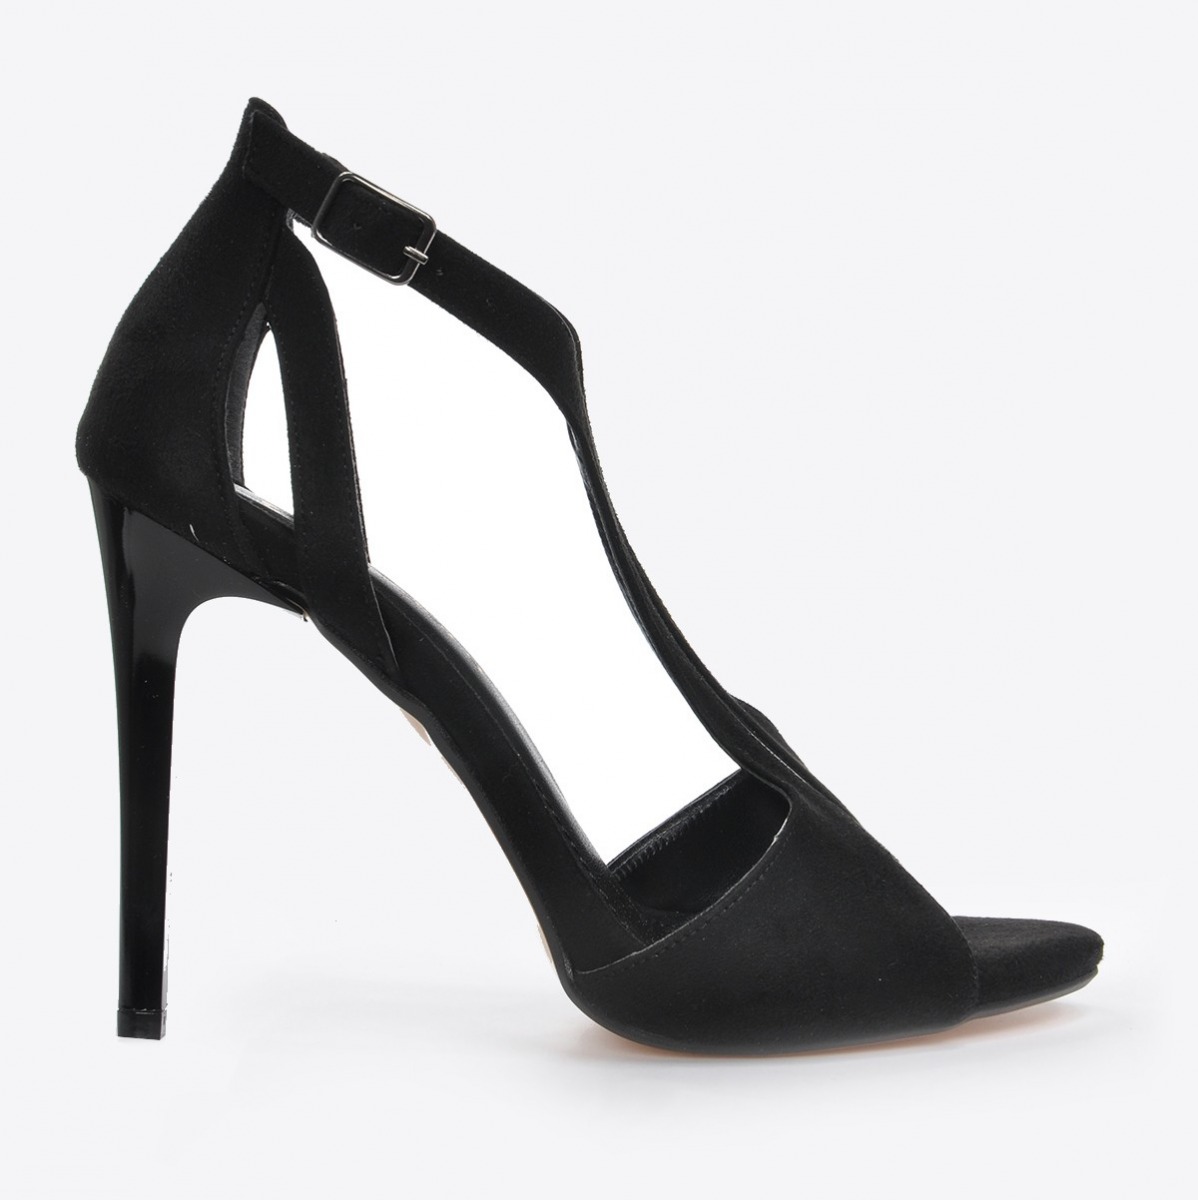 Flo Kadın Siyah Süet Klasik Topuklu Ayakkabı VZN20-178Y. 1